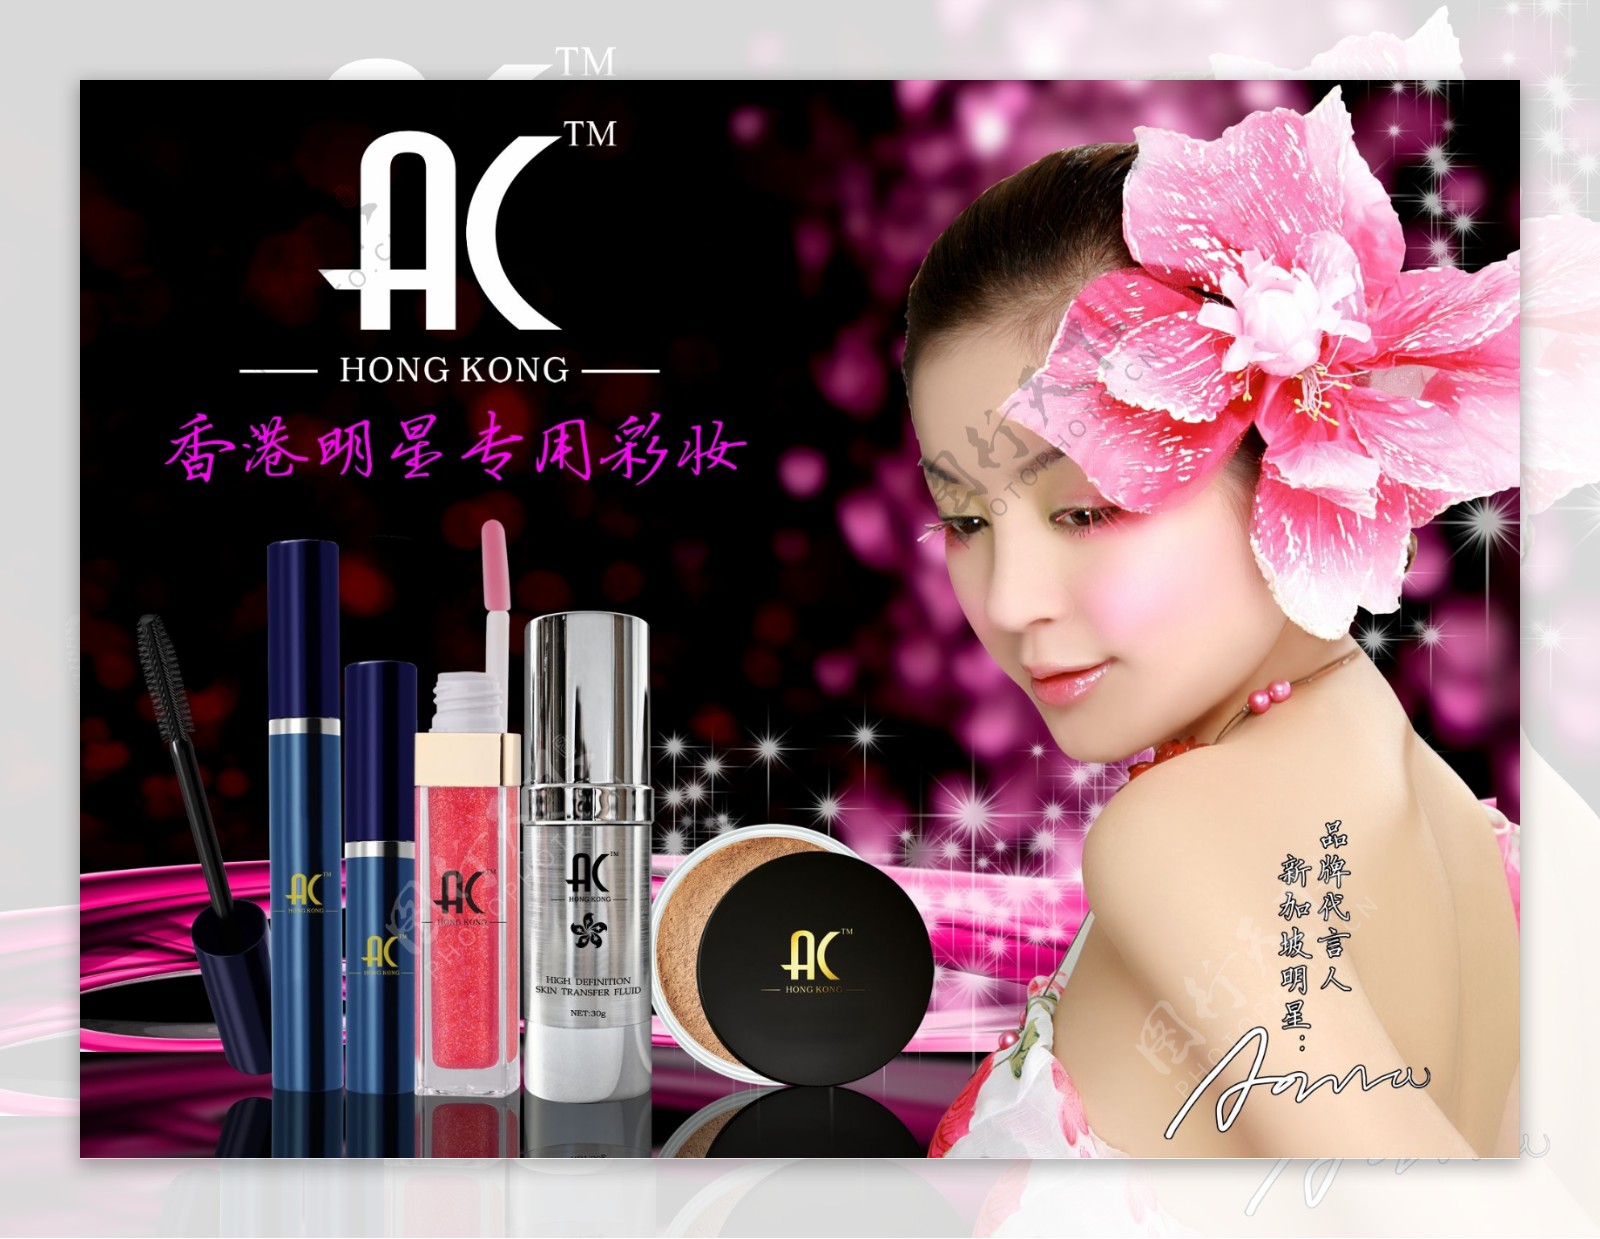 AC香港明星专用彩妆广告图片